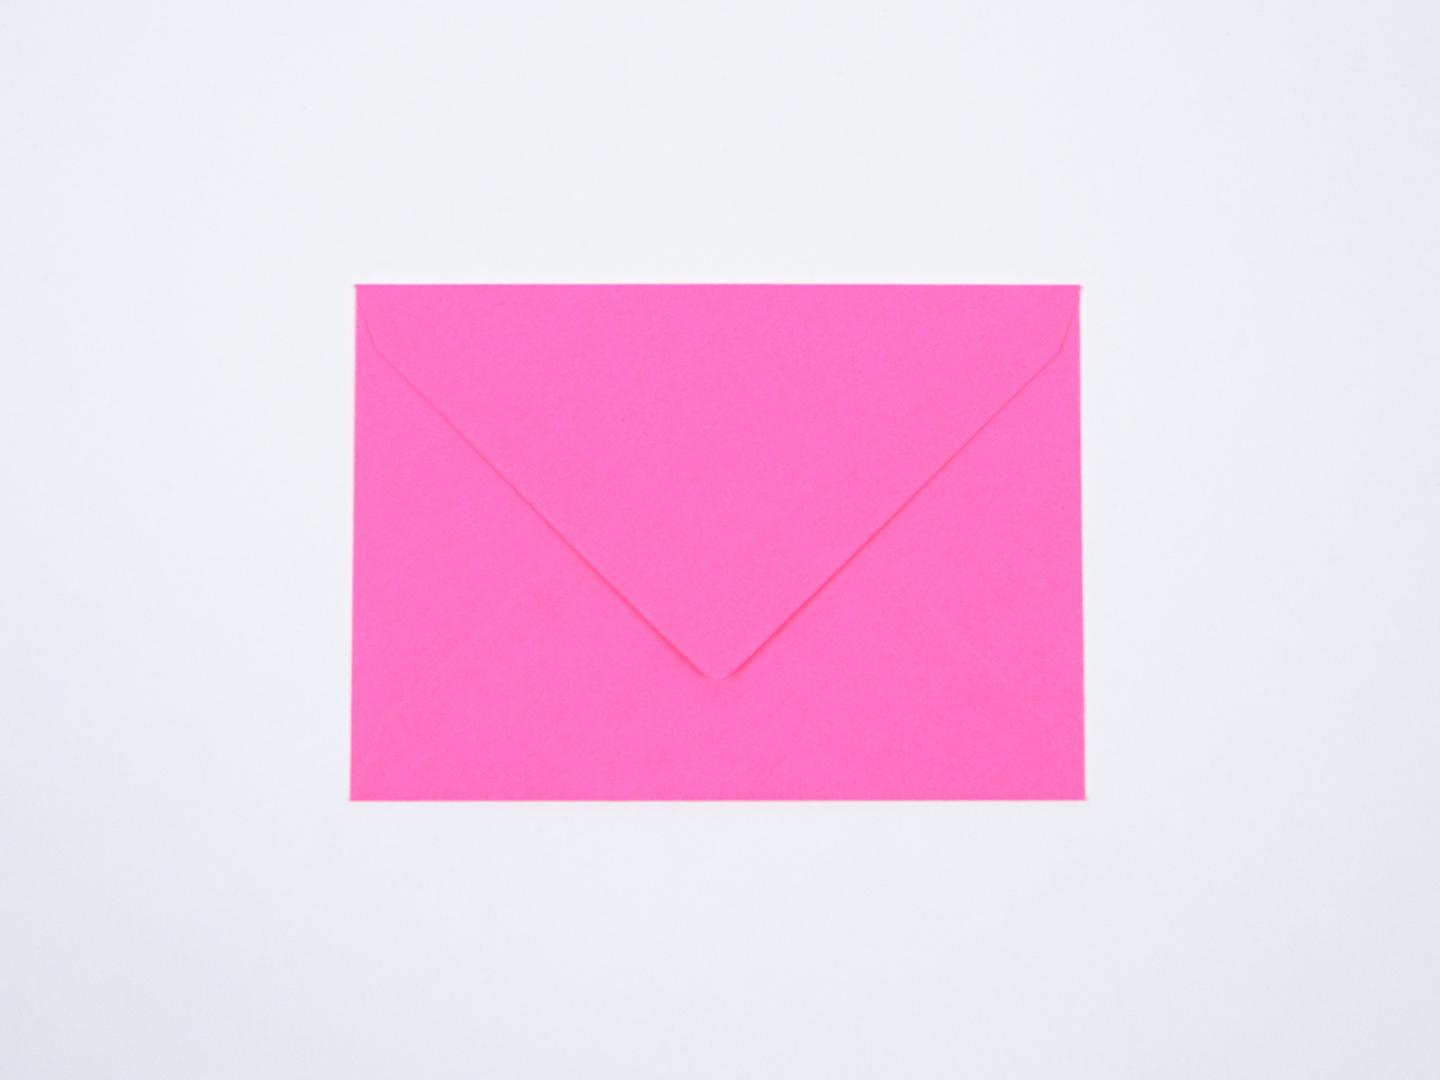 Kuvert in pink